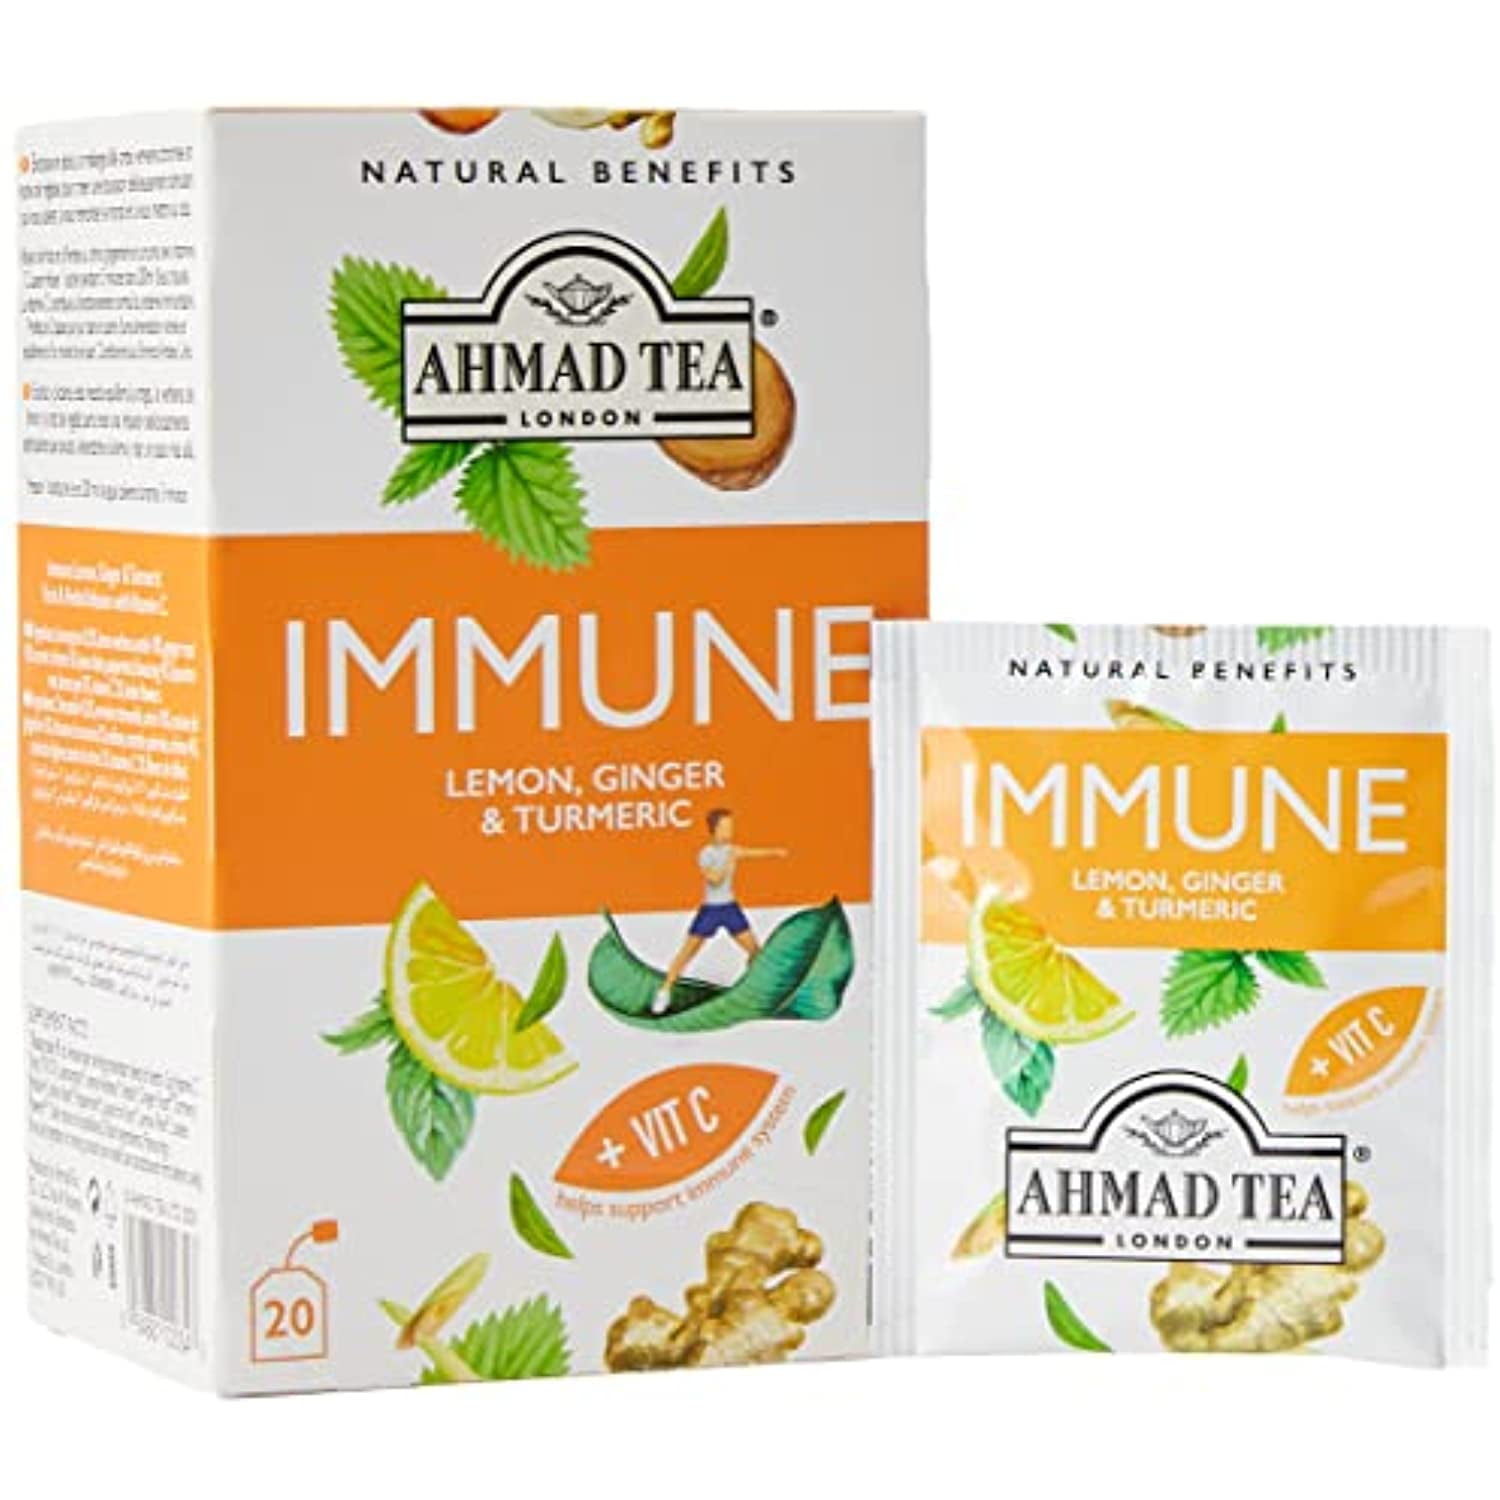 Fruit Tea Bundle - 120 Teabags – AHMAD TEA